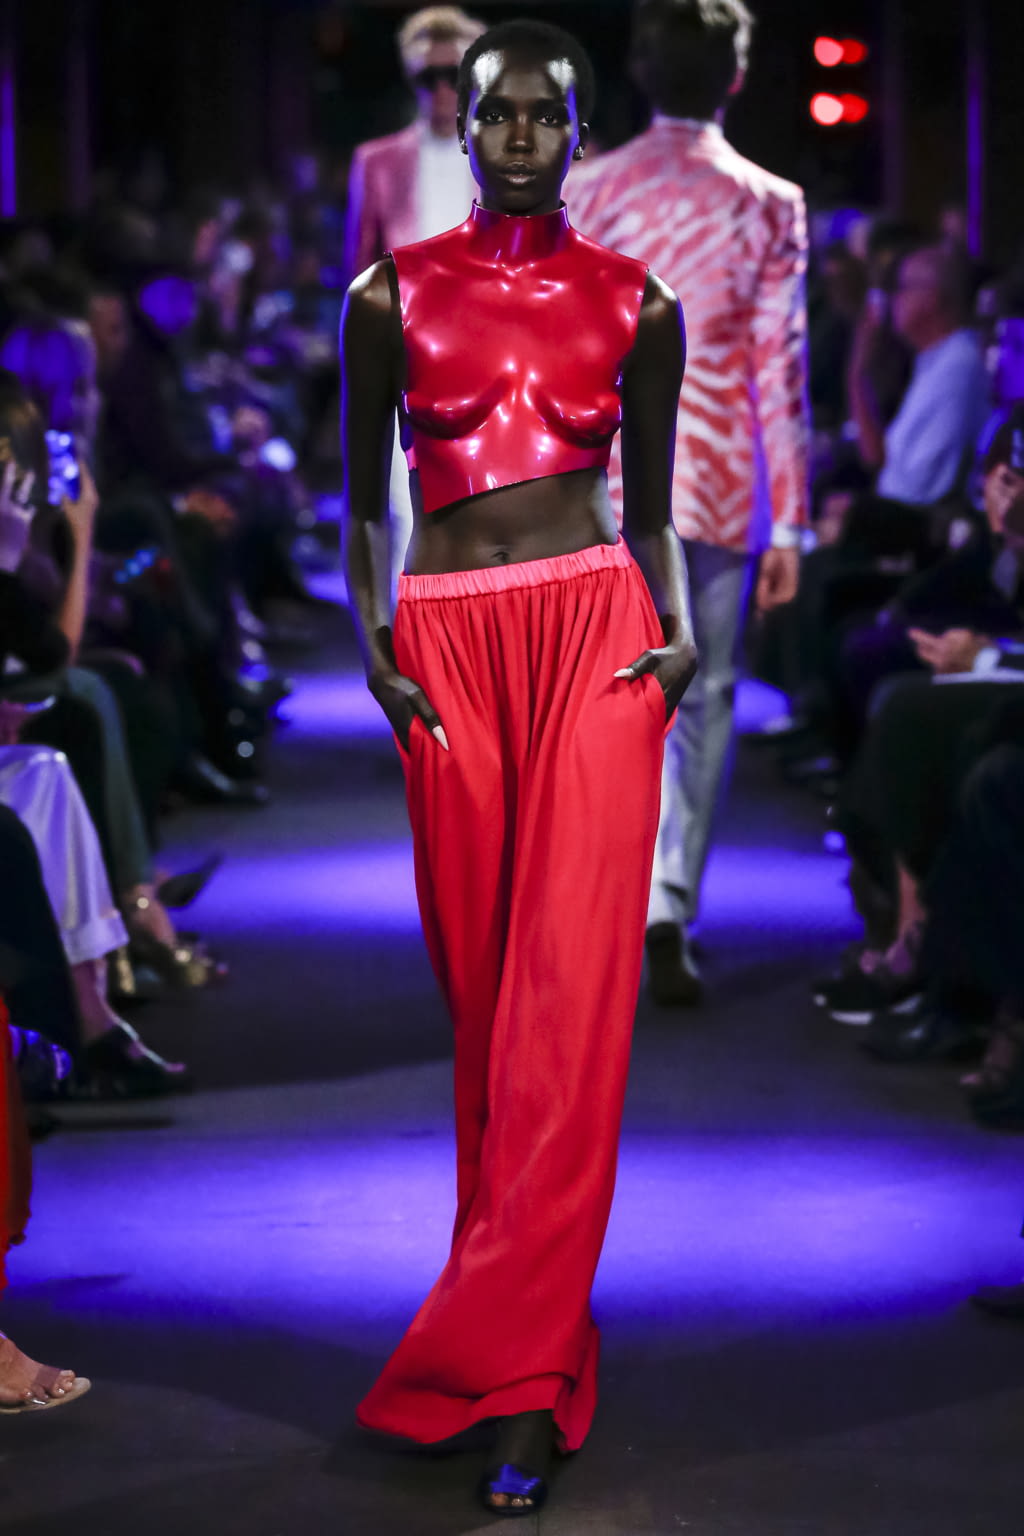 Louis Vuitton SS20 menswear #39 - Tagwalk: The Fashion Search Engine